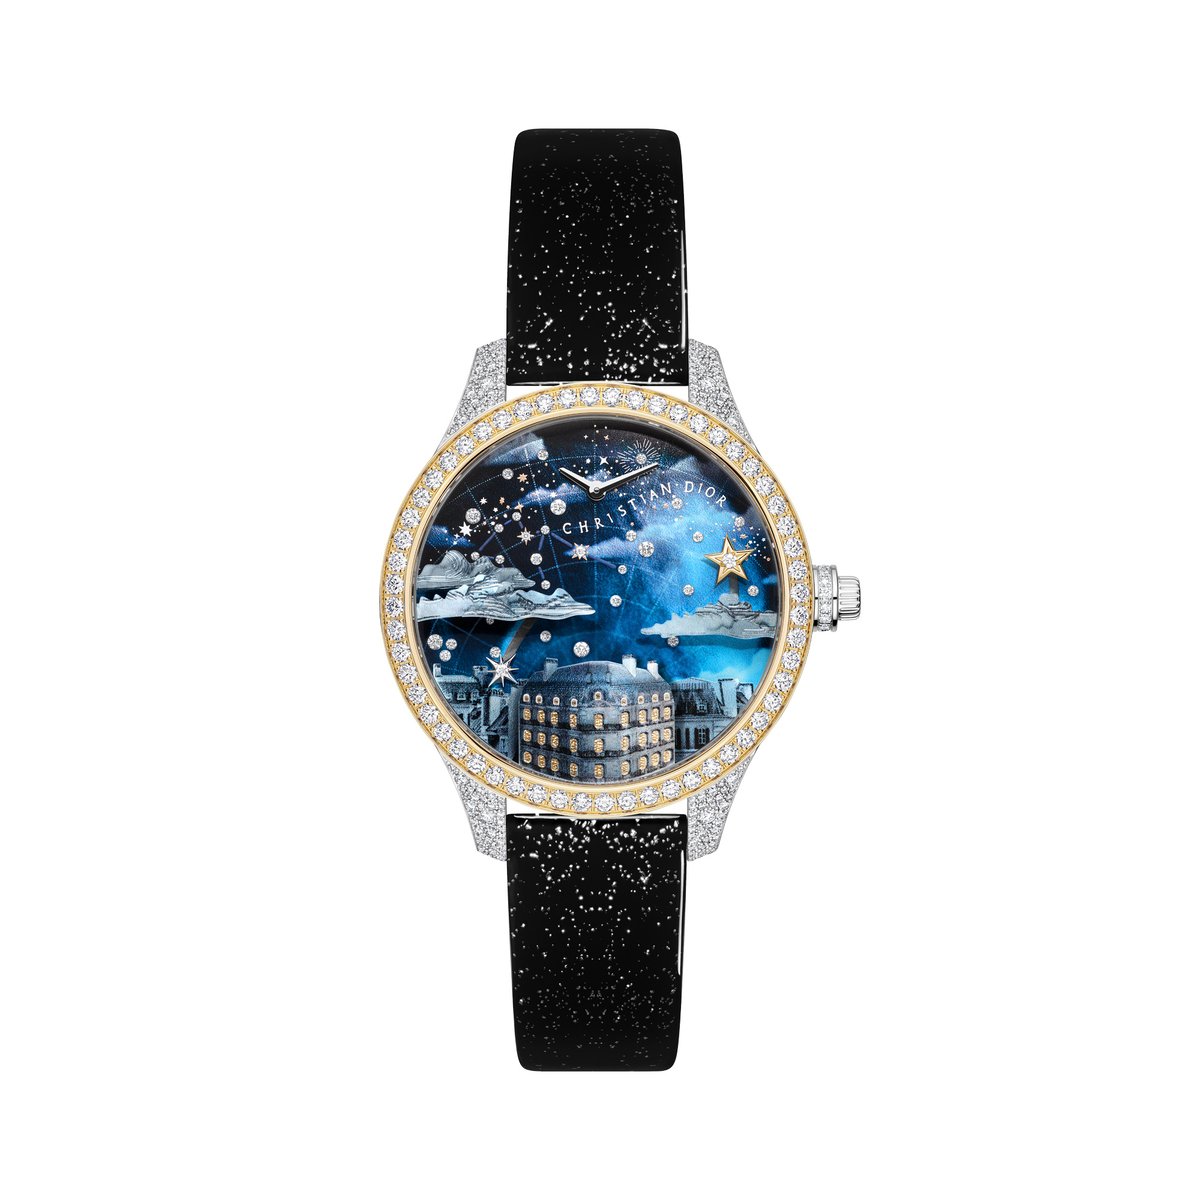 ディオール新作腕時計「ディオール グラン ソワール オートマタ」イメージ